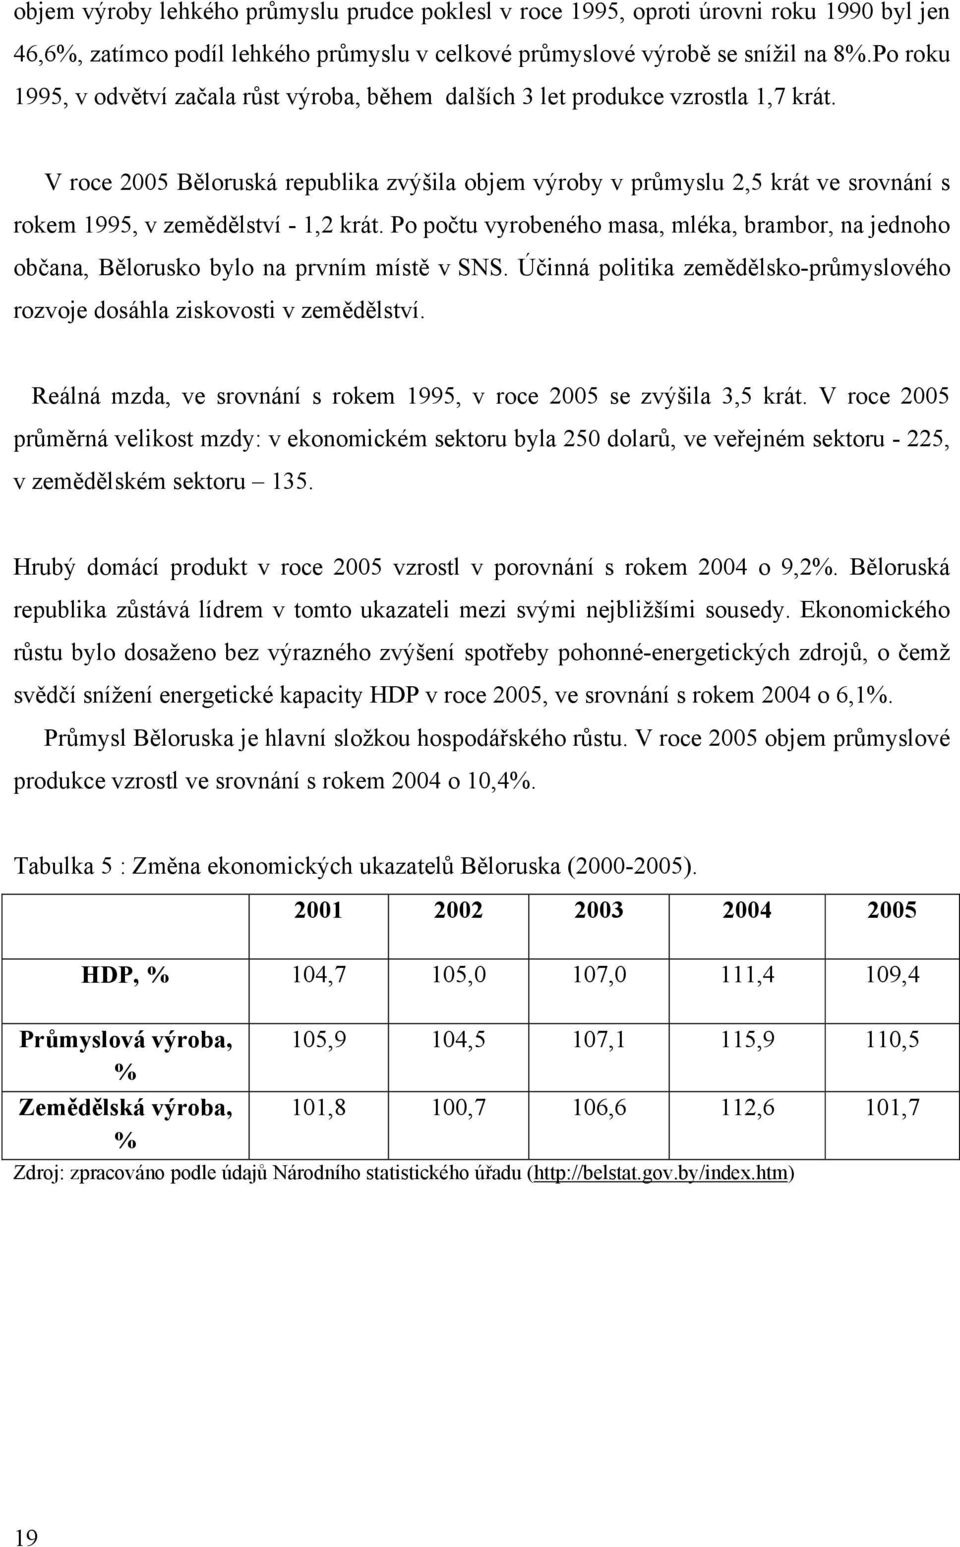 V roce 2005 Běloruská republika zvýšila objem výroby v průmyslu 2,5 krát ve srovnání s rokem 1995, v zemědělství - 1,2 krát.